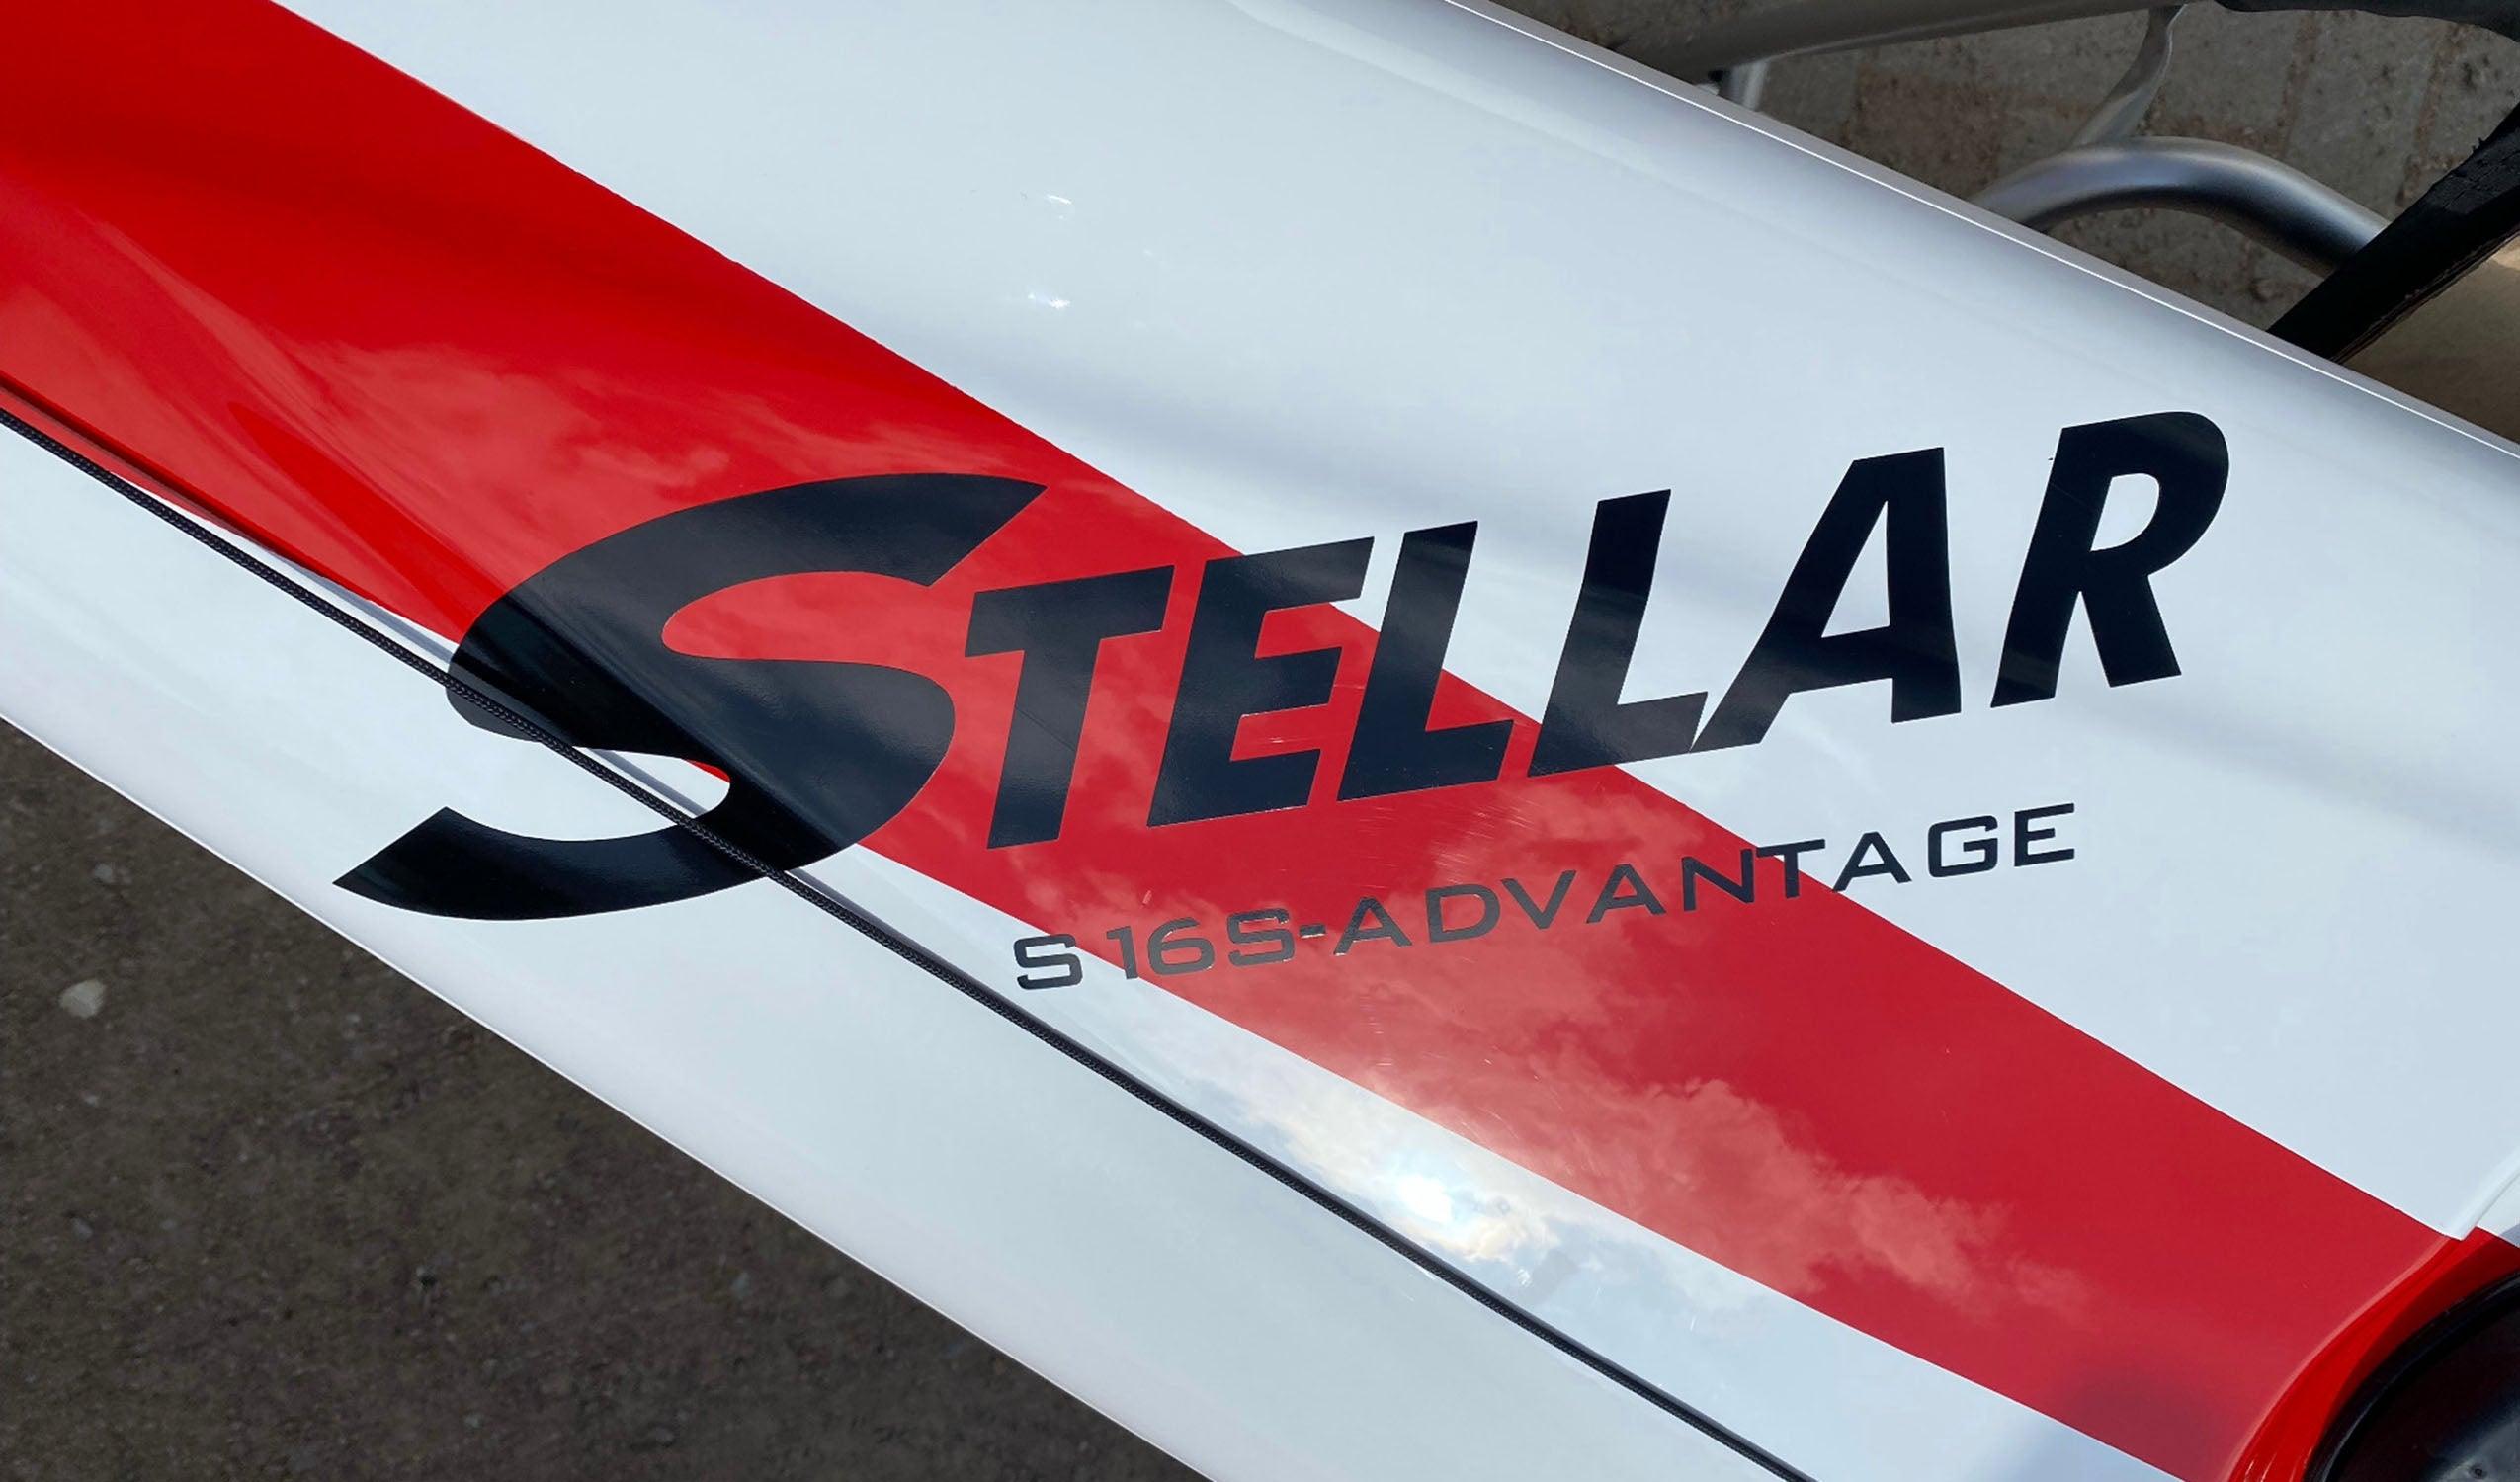 Produktbild von Kajak " S16S G2 Advantage-weiß rot " der Marke STELLAR Lightweight für 2990.00 €. Erhältlich online bei Lite Venture ( www.liteventure.de )